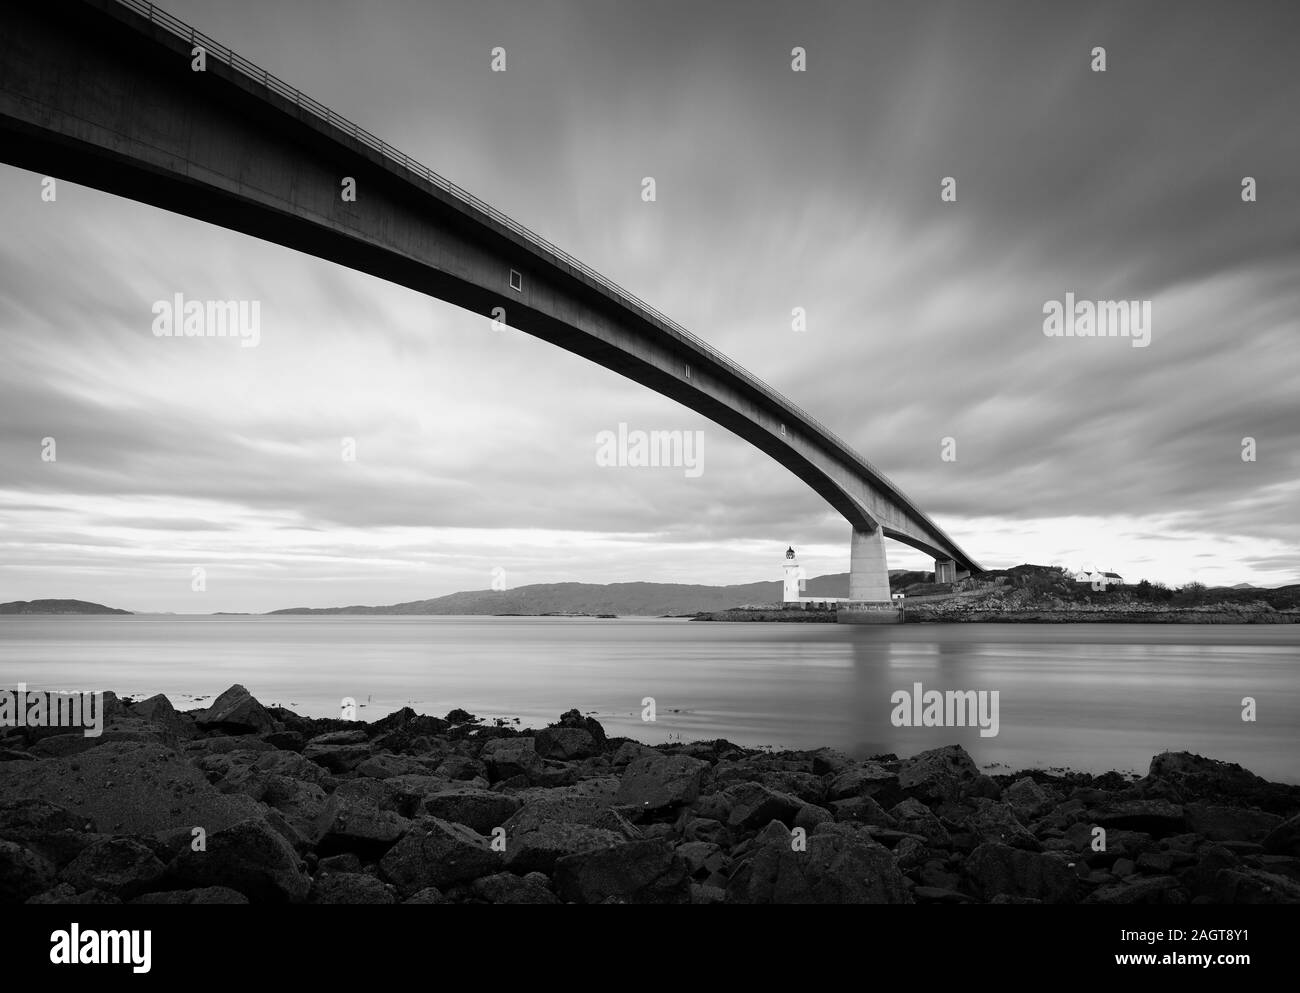 Fotografia Di © Jamie Callister. Isle of Skye Bridge, costruito nel 1995, Eilean Ban, Isle of Skye, North West Scotland, Regno Unito, 25th di novembre 2019. Foto Stock